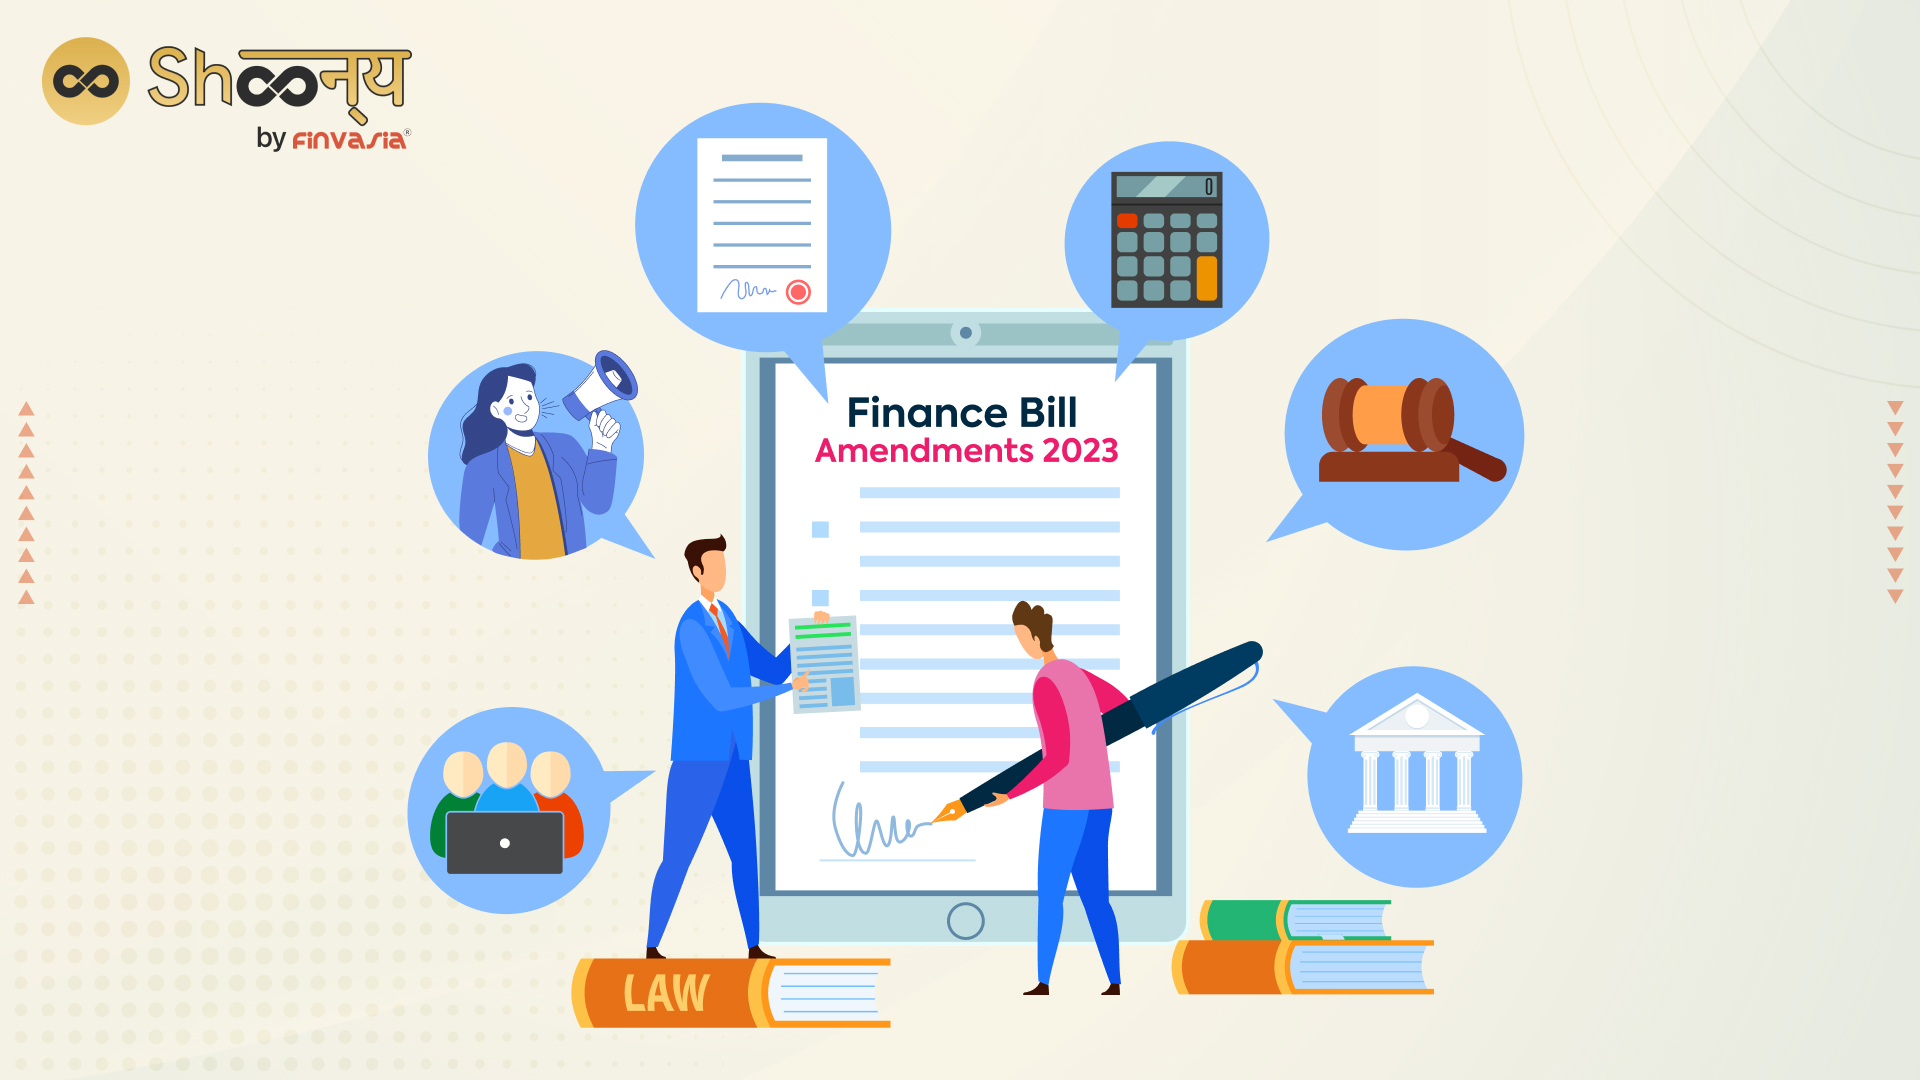 Major Amendments in Finance Bill 2023